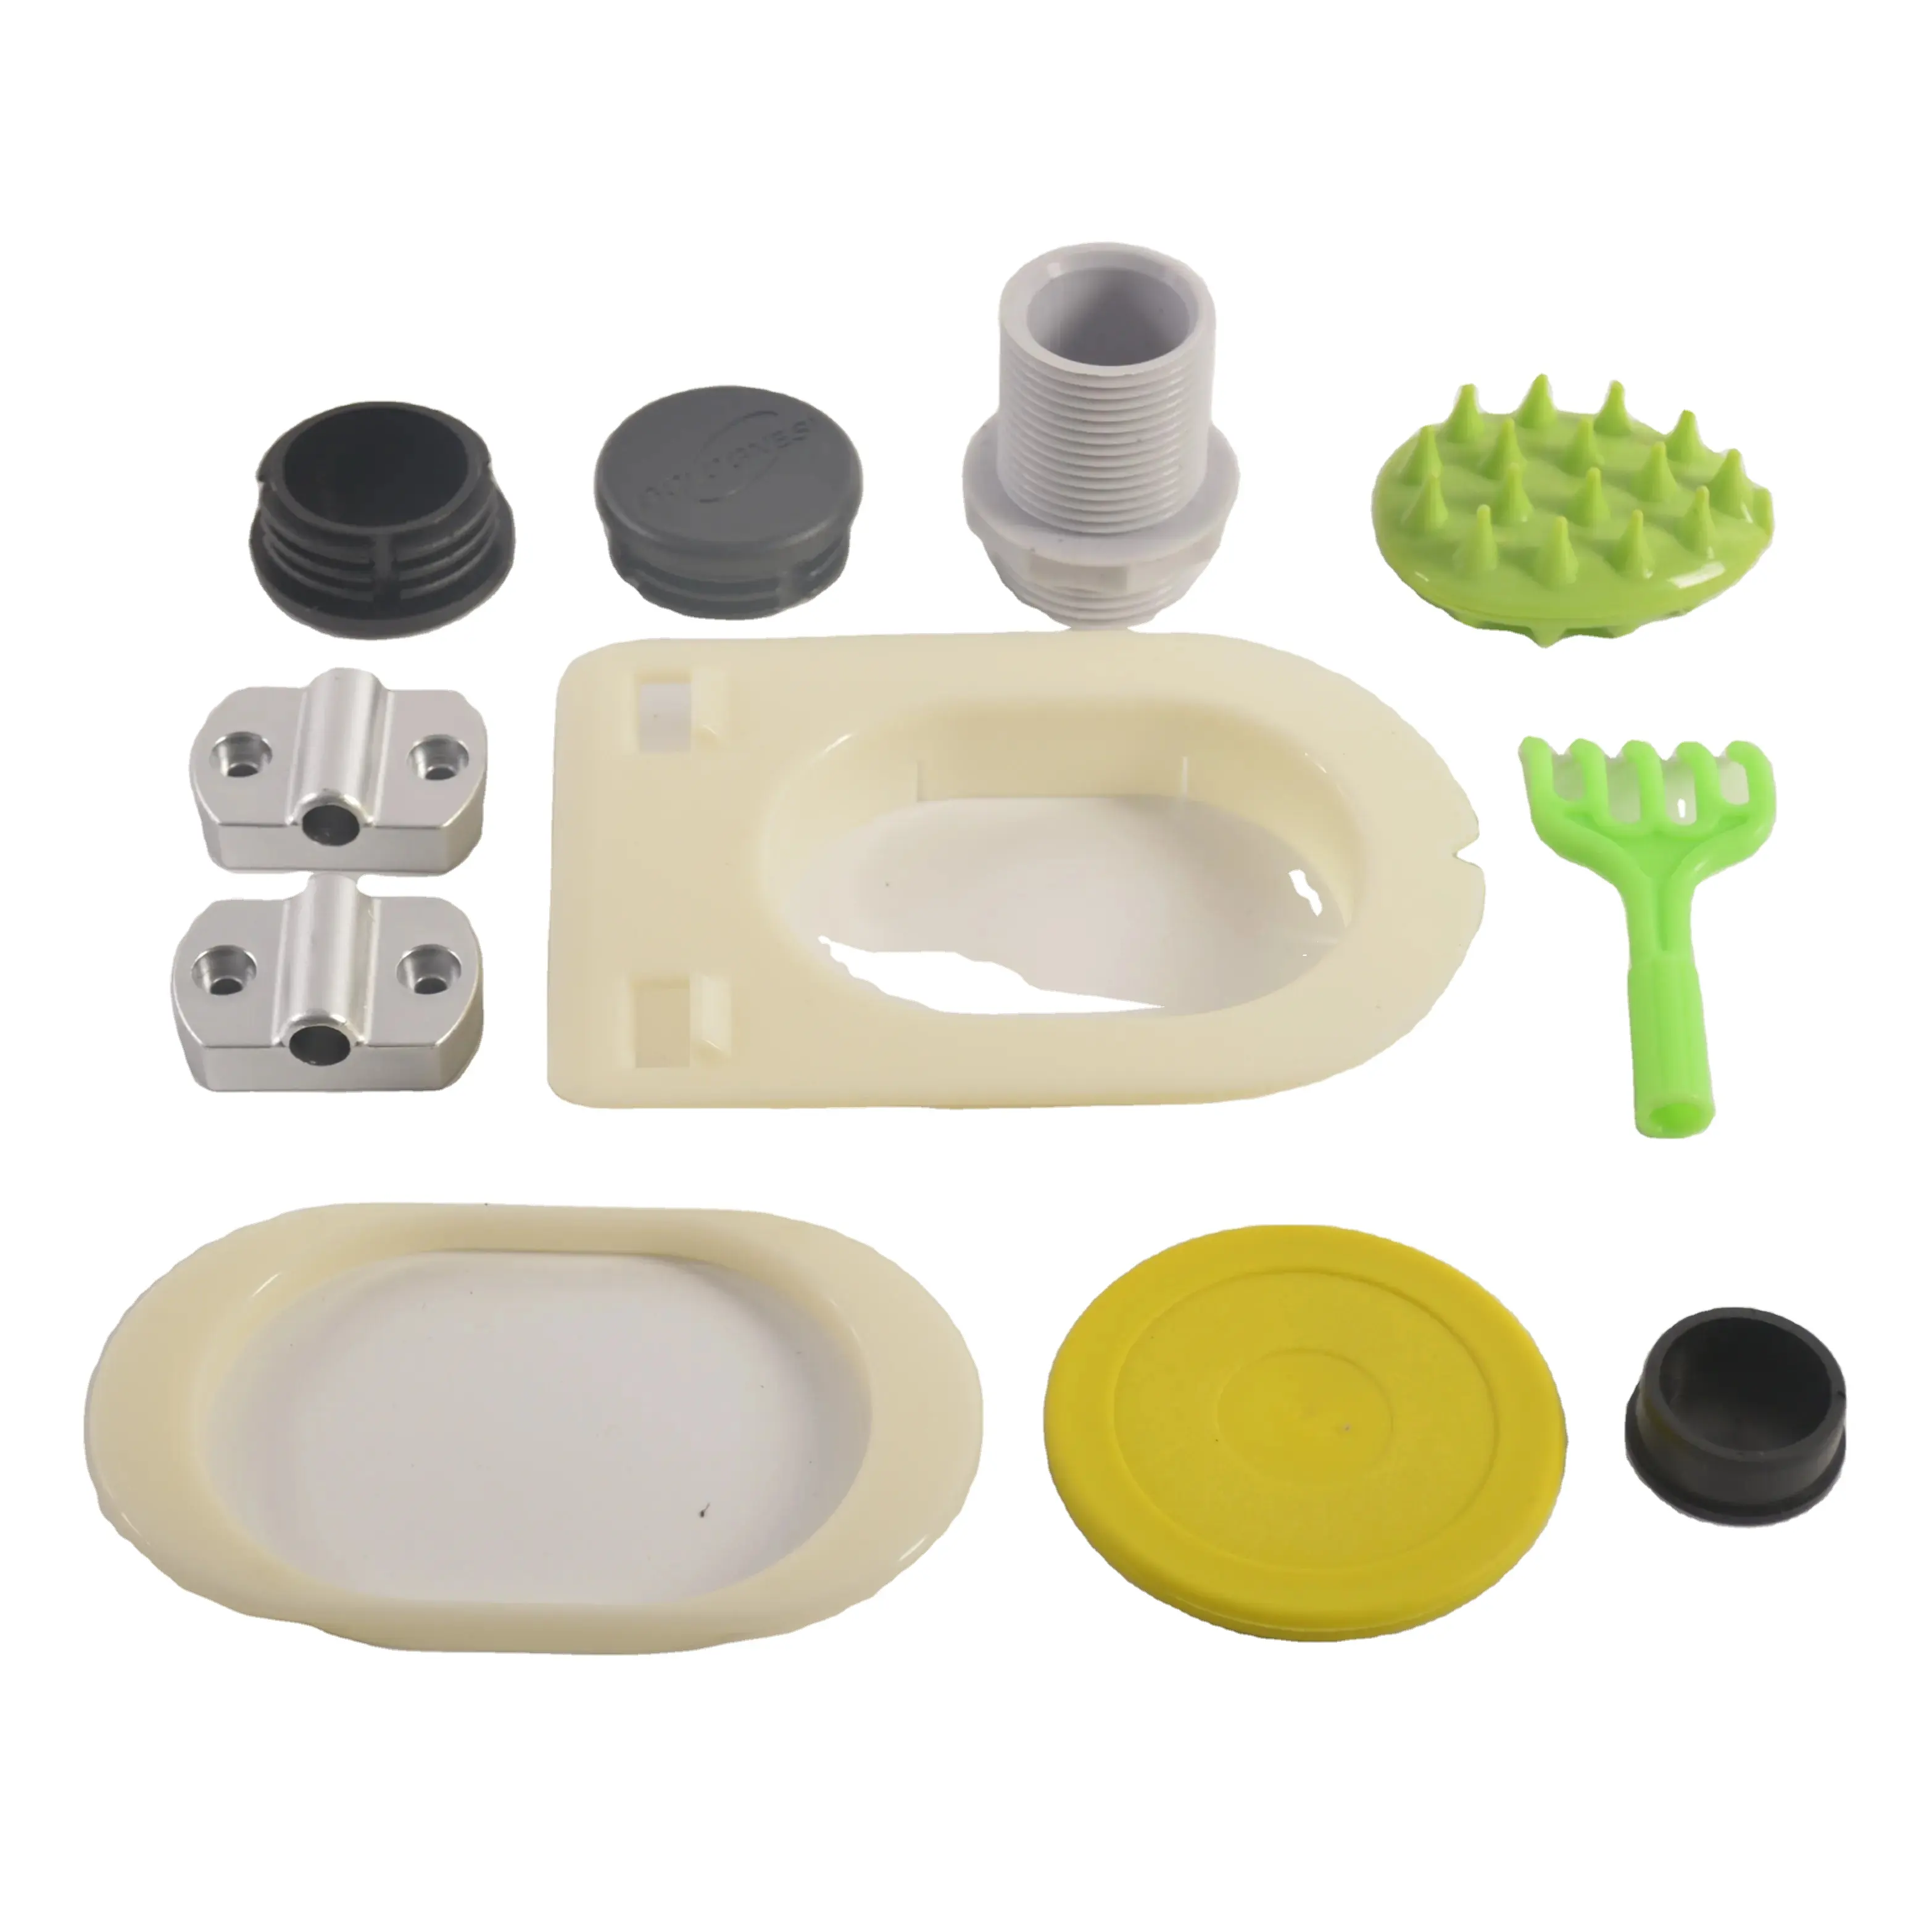 ODM OEM, servicio personalizado de moldeo de plástico, ABS, piezas de juguete de plástico personalizadas para mascotas, productos de moldeo por inyección